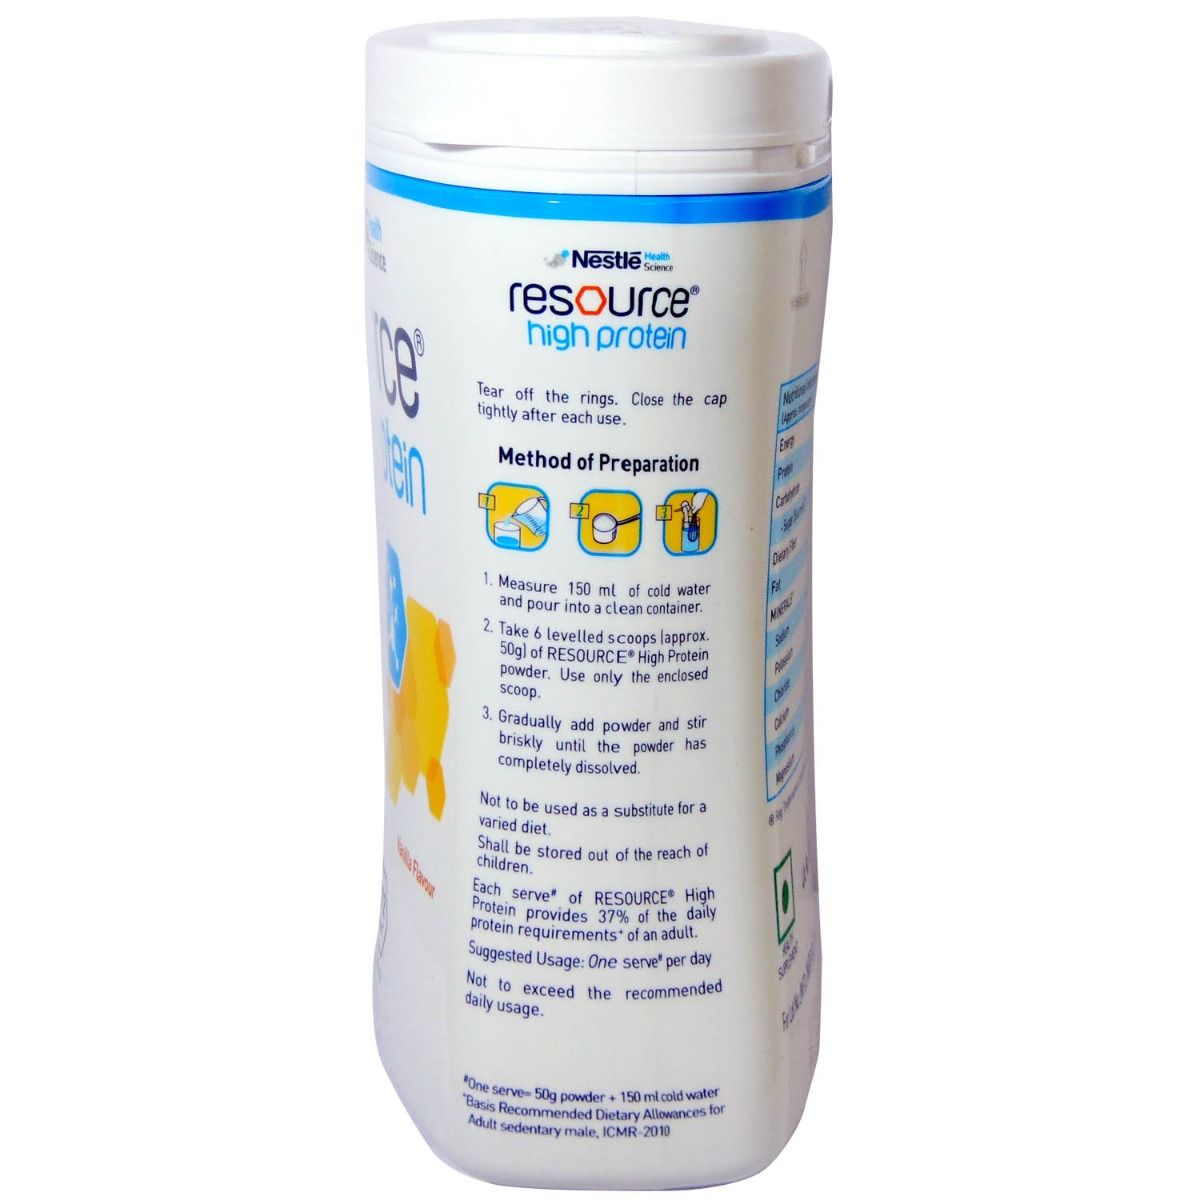 Nestle Resource High Protein Vanilla Flavour Powder, 400 gm, Pack of 1 